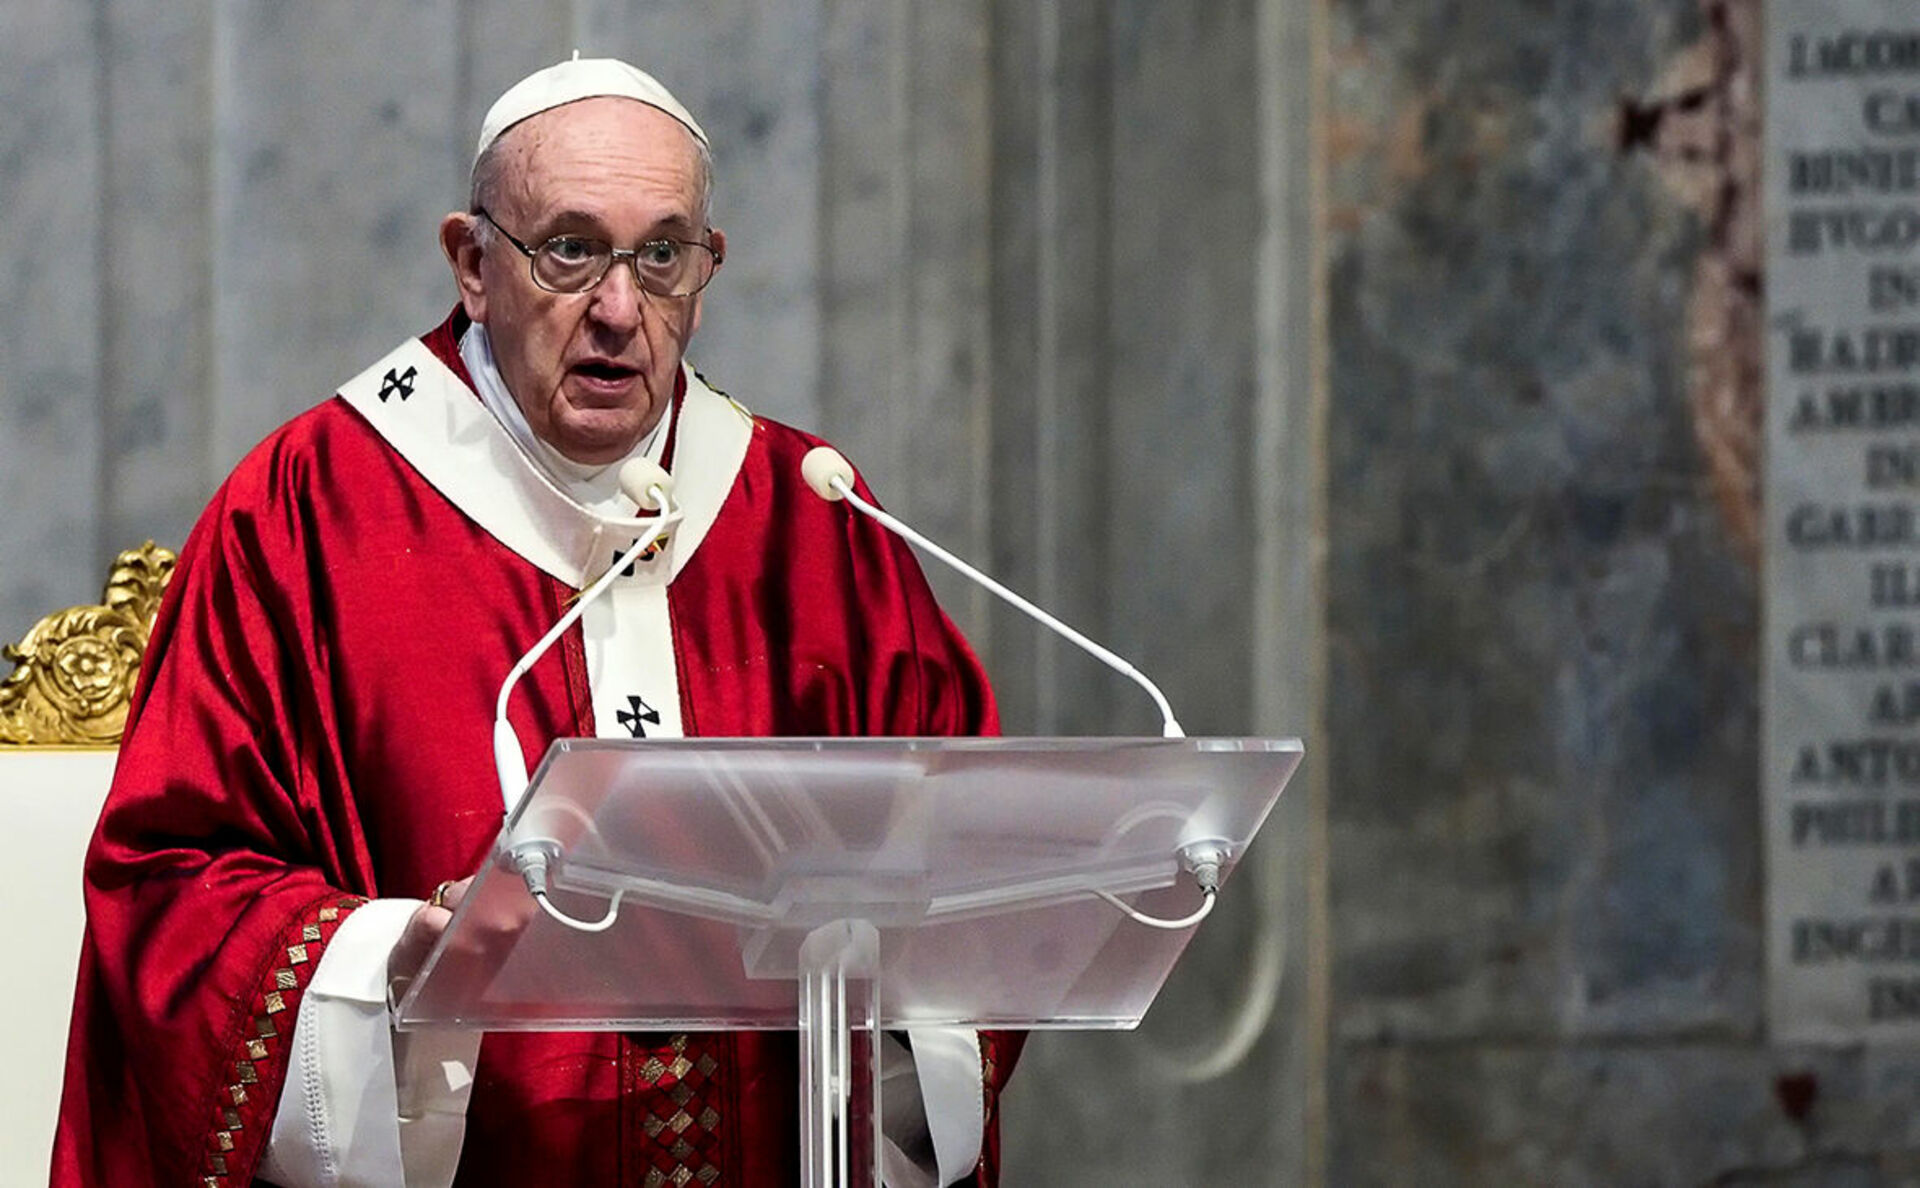 Франциск (папа Римский). Папа Римский Франциск 2020. Папа Римский Франциск 2022. Франциск 1 папа Римский. Сколько лет было папе римскому